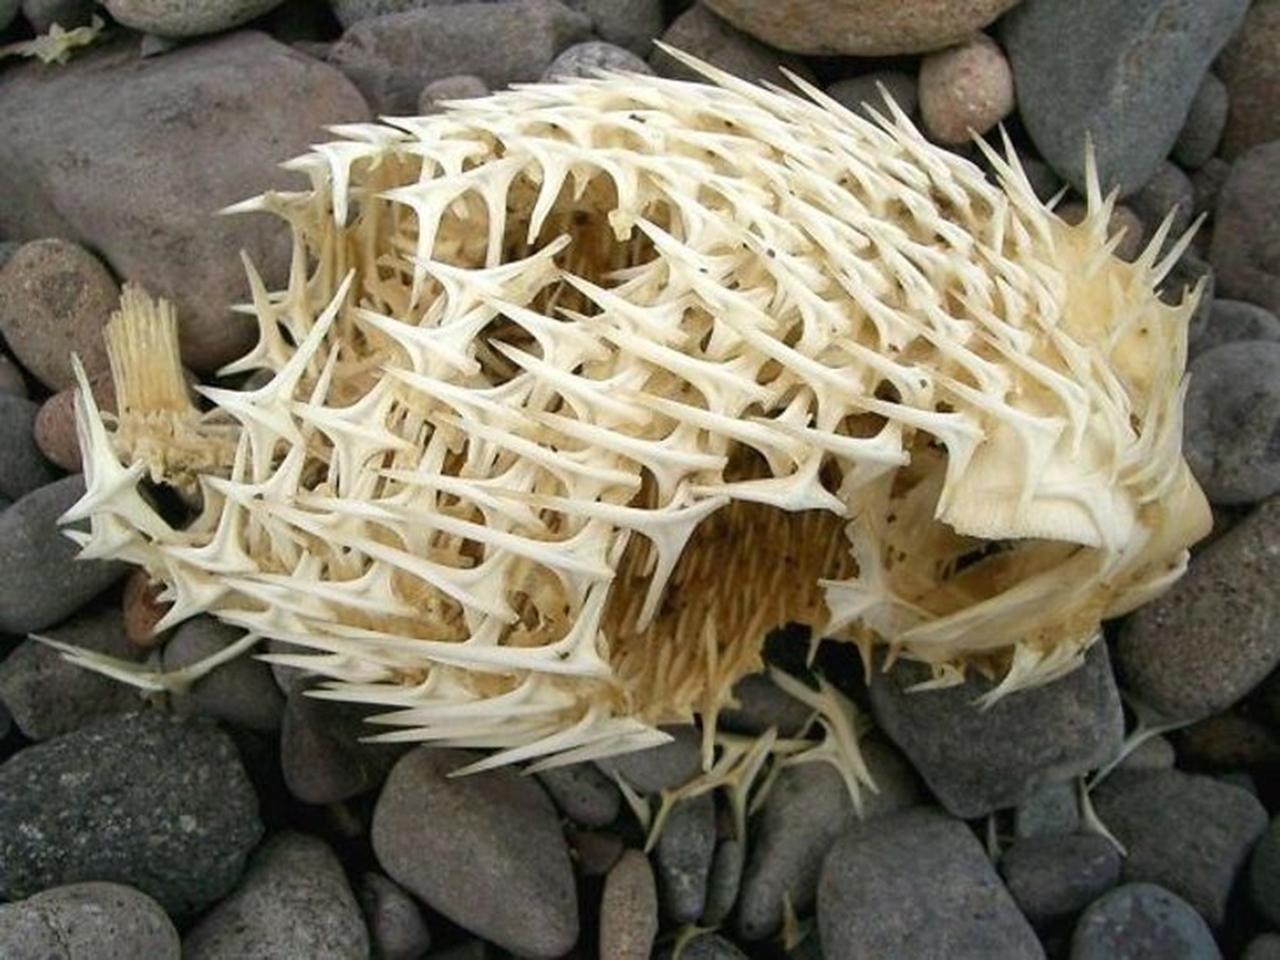 blowfish skeleton